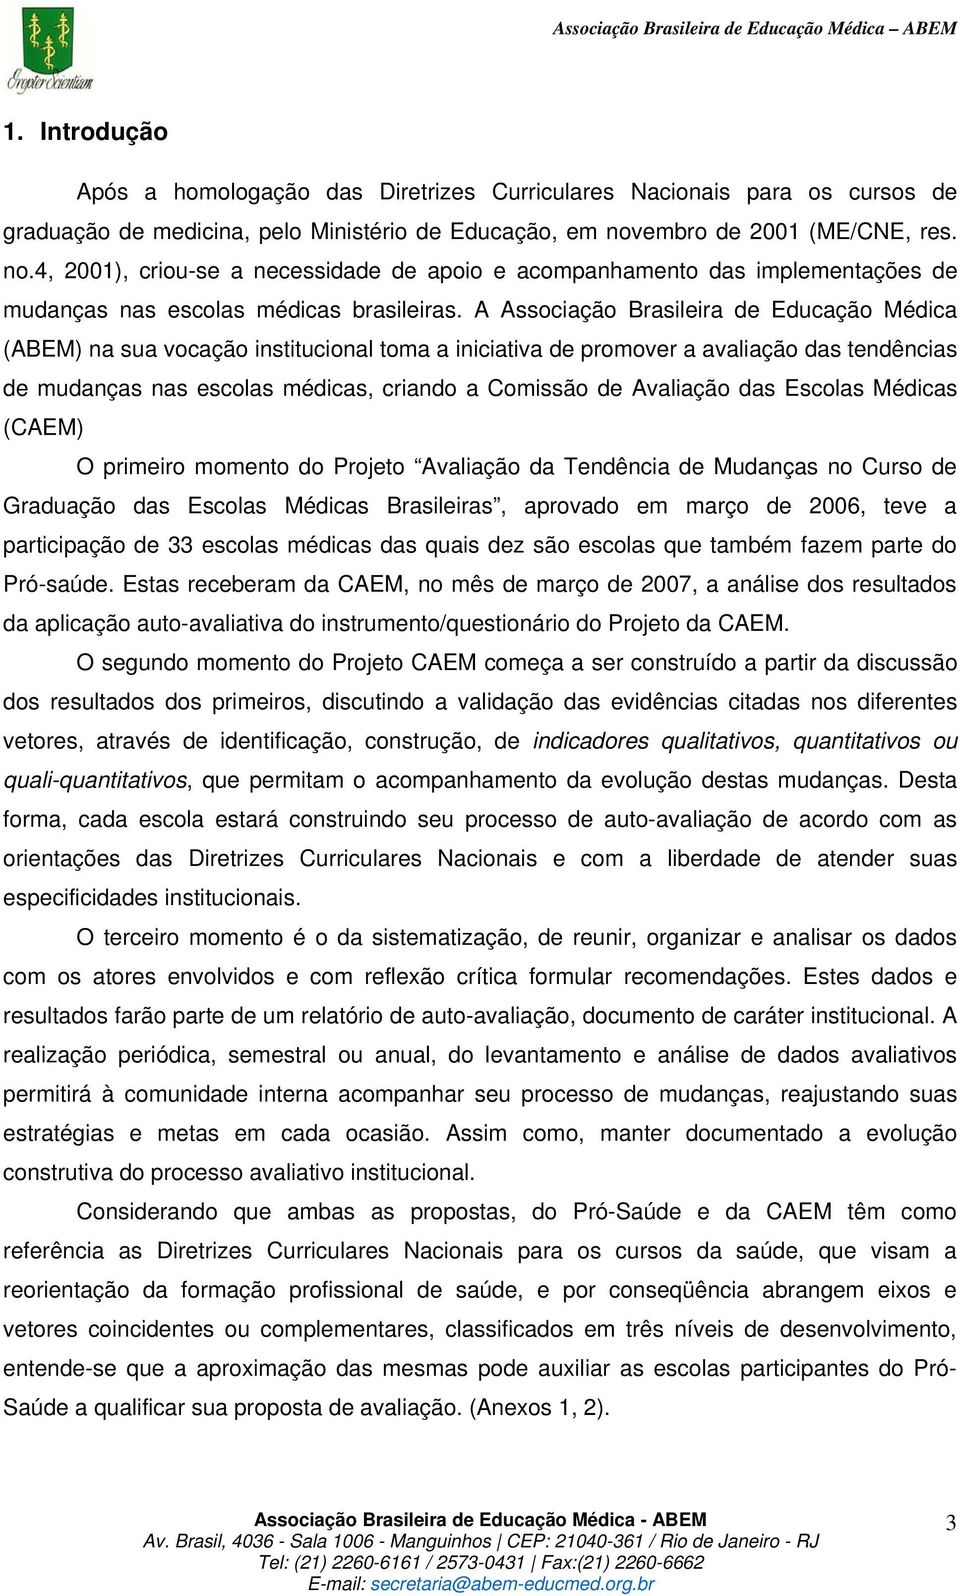 A Associação Brasileira de Educação Médica (ABEM) na sua vocação institucional toma a iniciativa de promover a avaliação das tendências de mudanças nas escolas médicas, criando a Comissão de